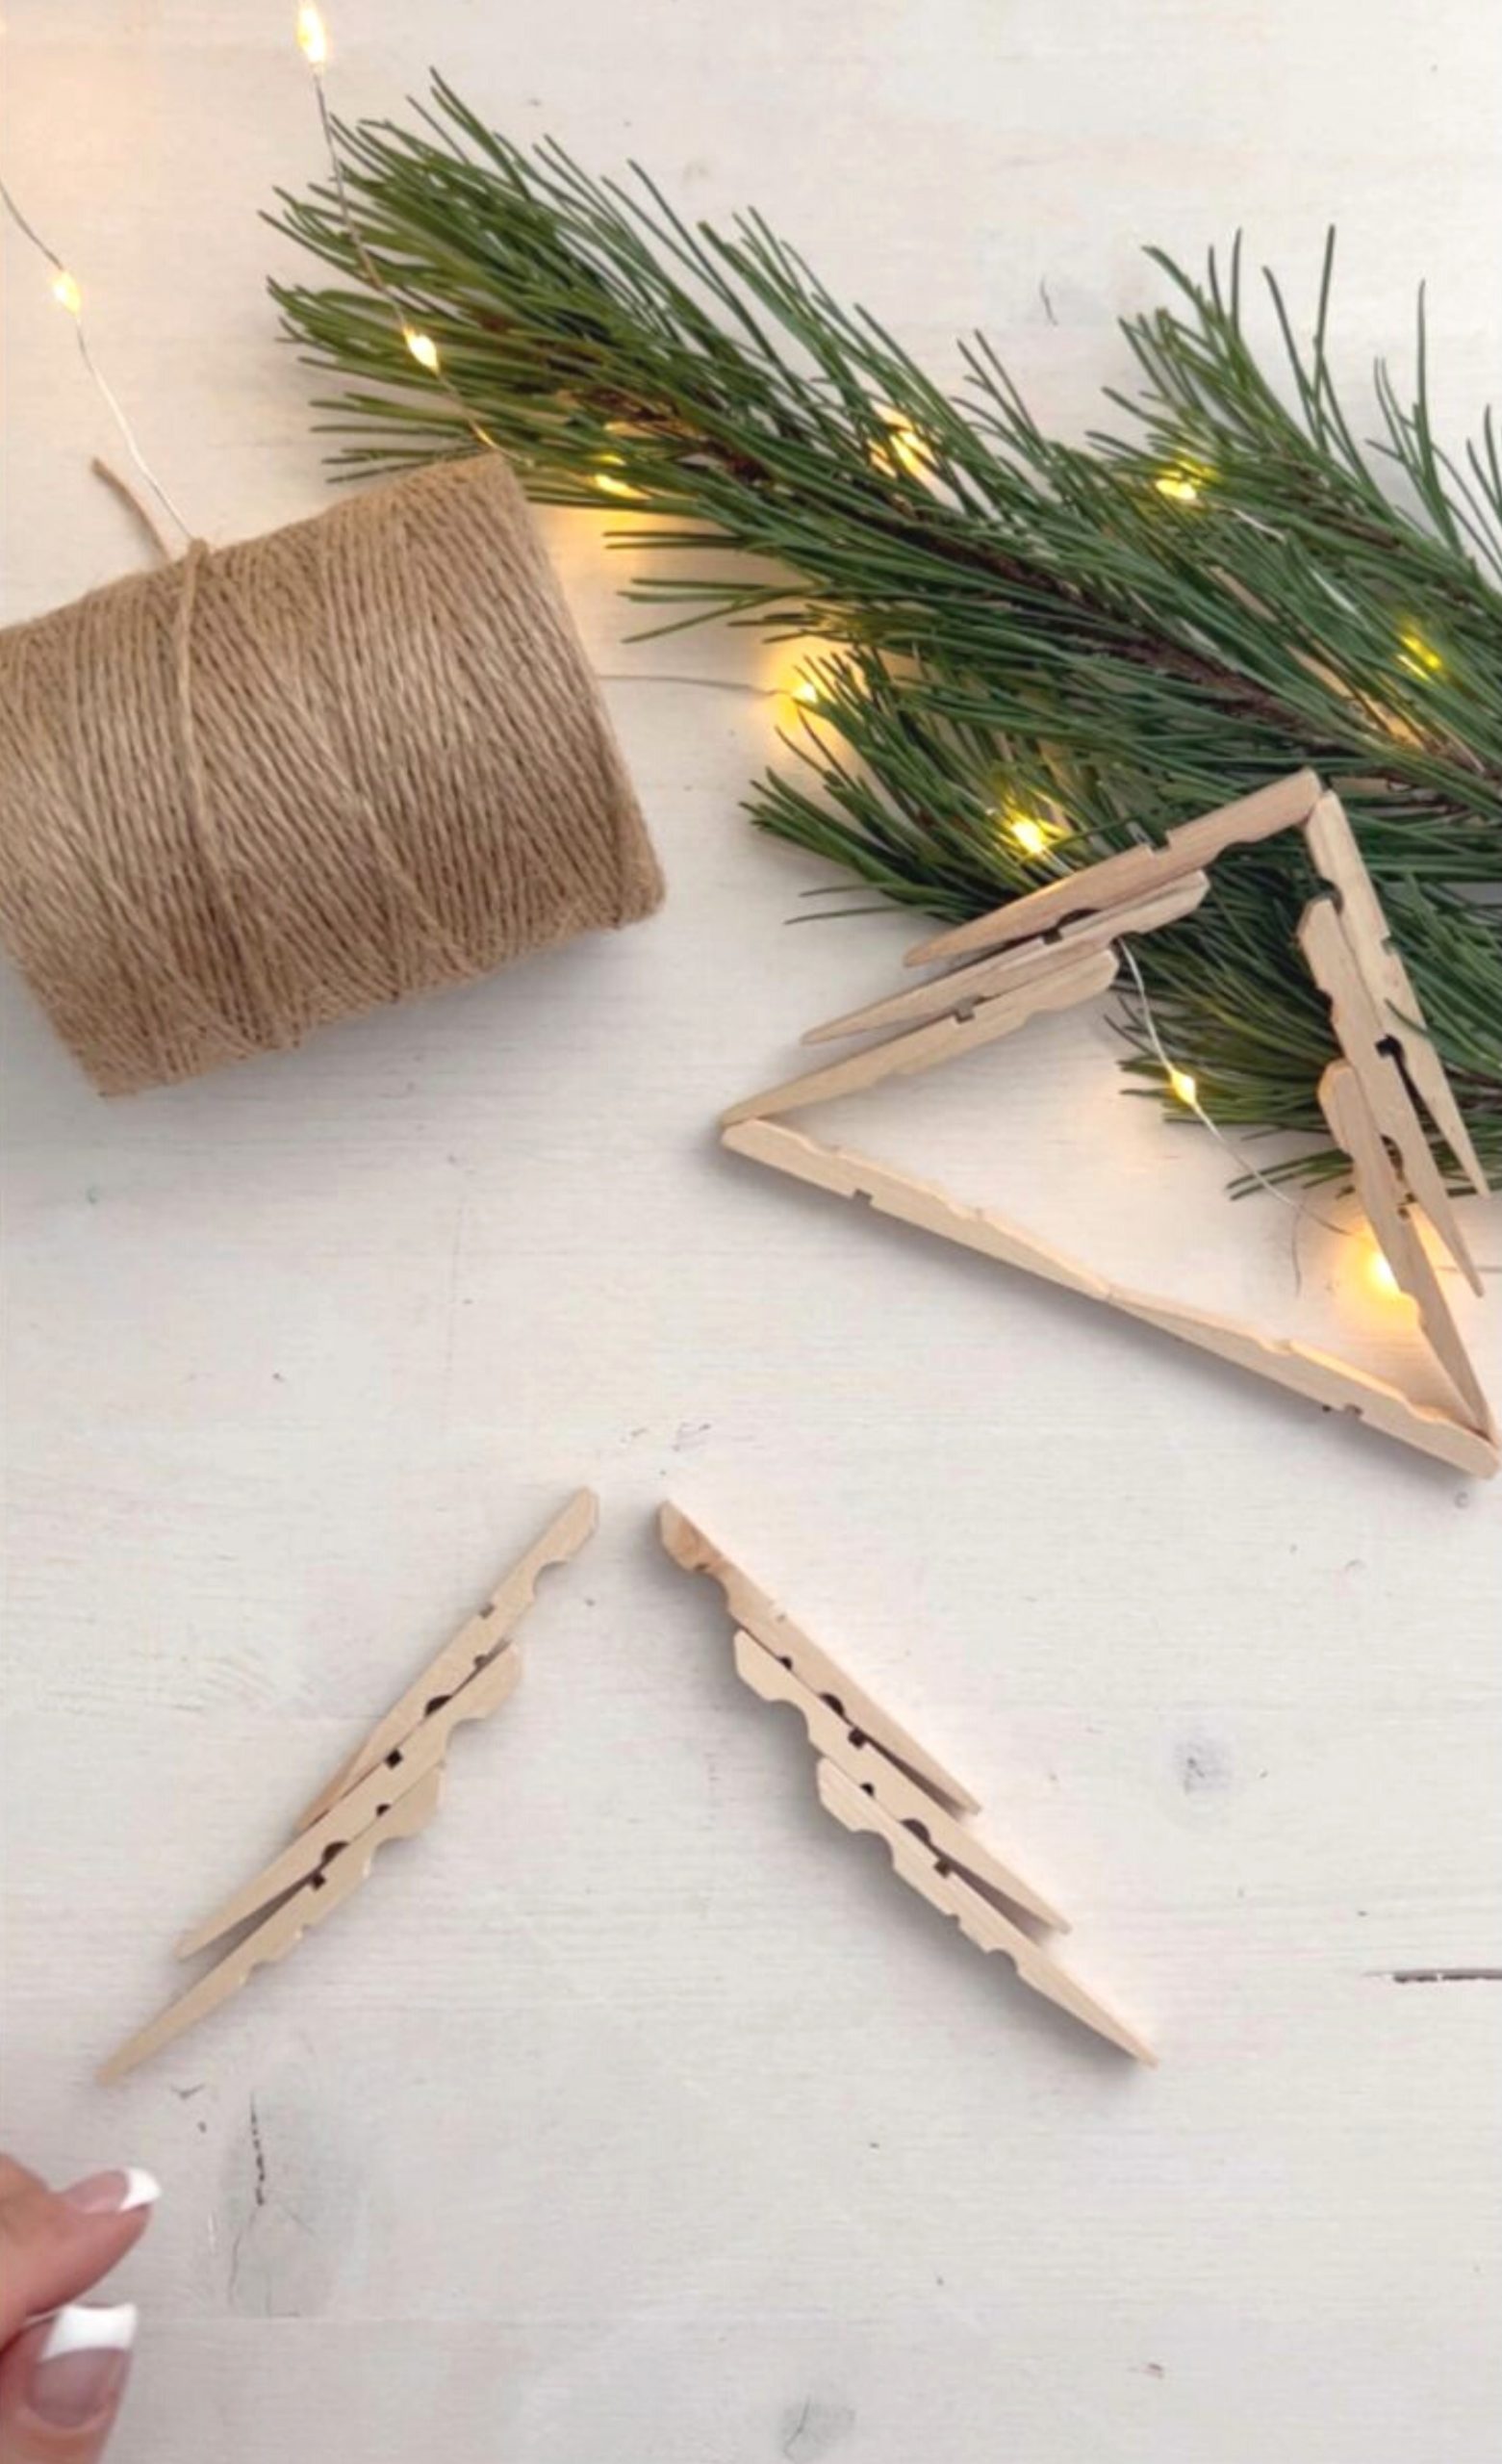 Weihnachtssterne aus Holzklammern | Kati make it